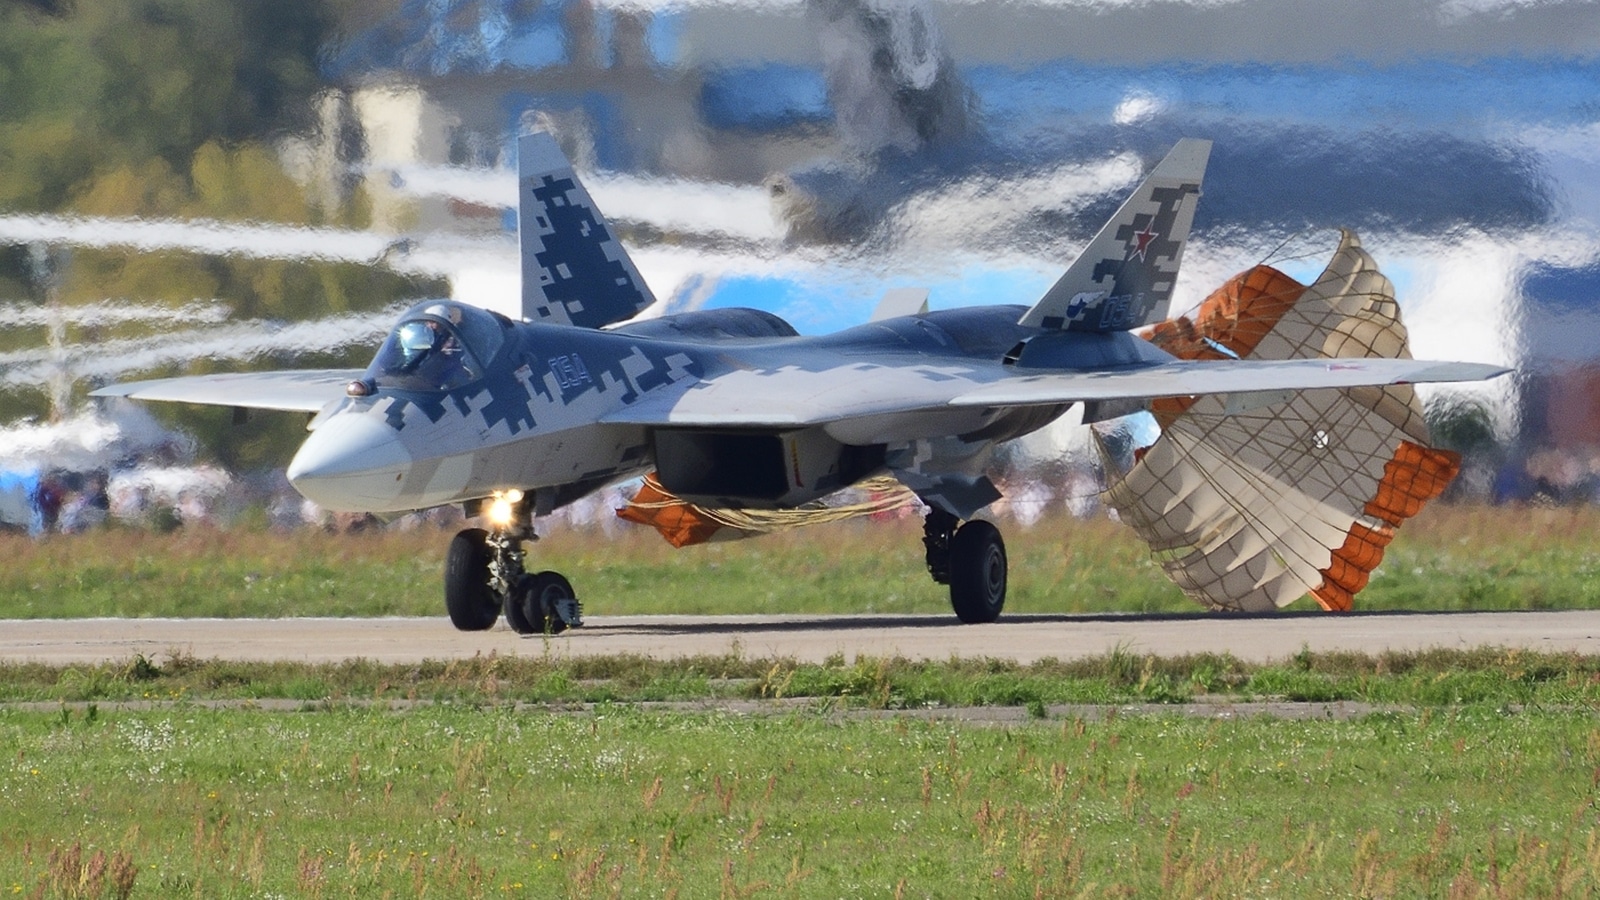 Le Sukhoi Su-57, vu ici à Moscou est l’un des chasseurs les plus avancés au monde. Son aérodynamique, sa structure en composites, et ses senseurs passifs, lui permettront d’être faiblement détectable dans un environnement adverse.
(c) François Brévot